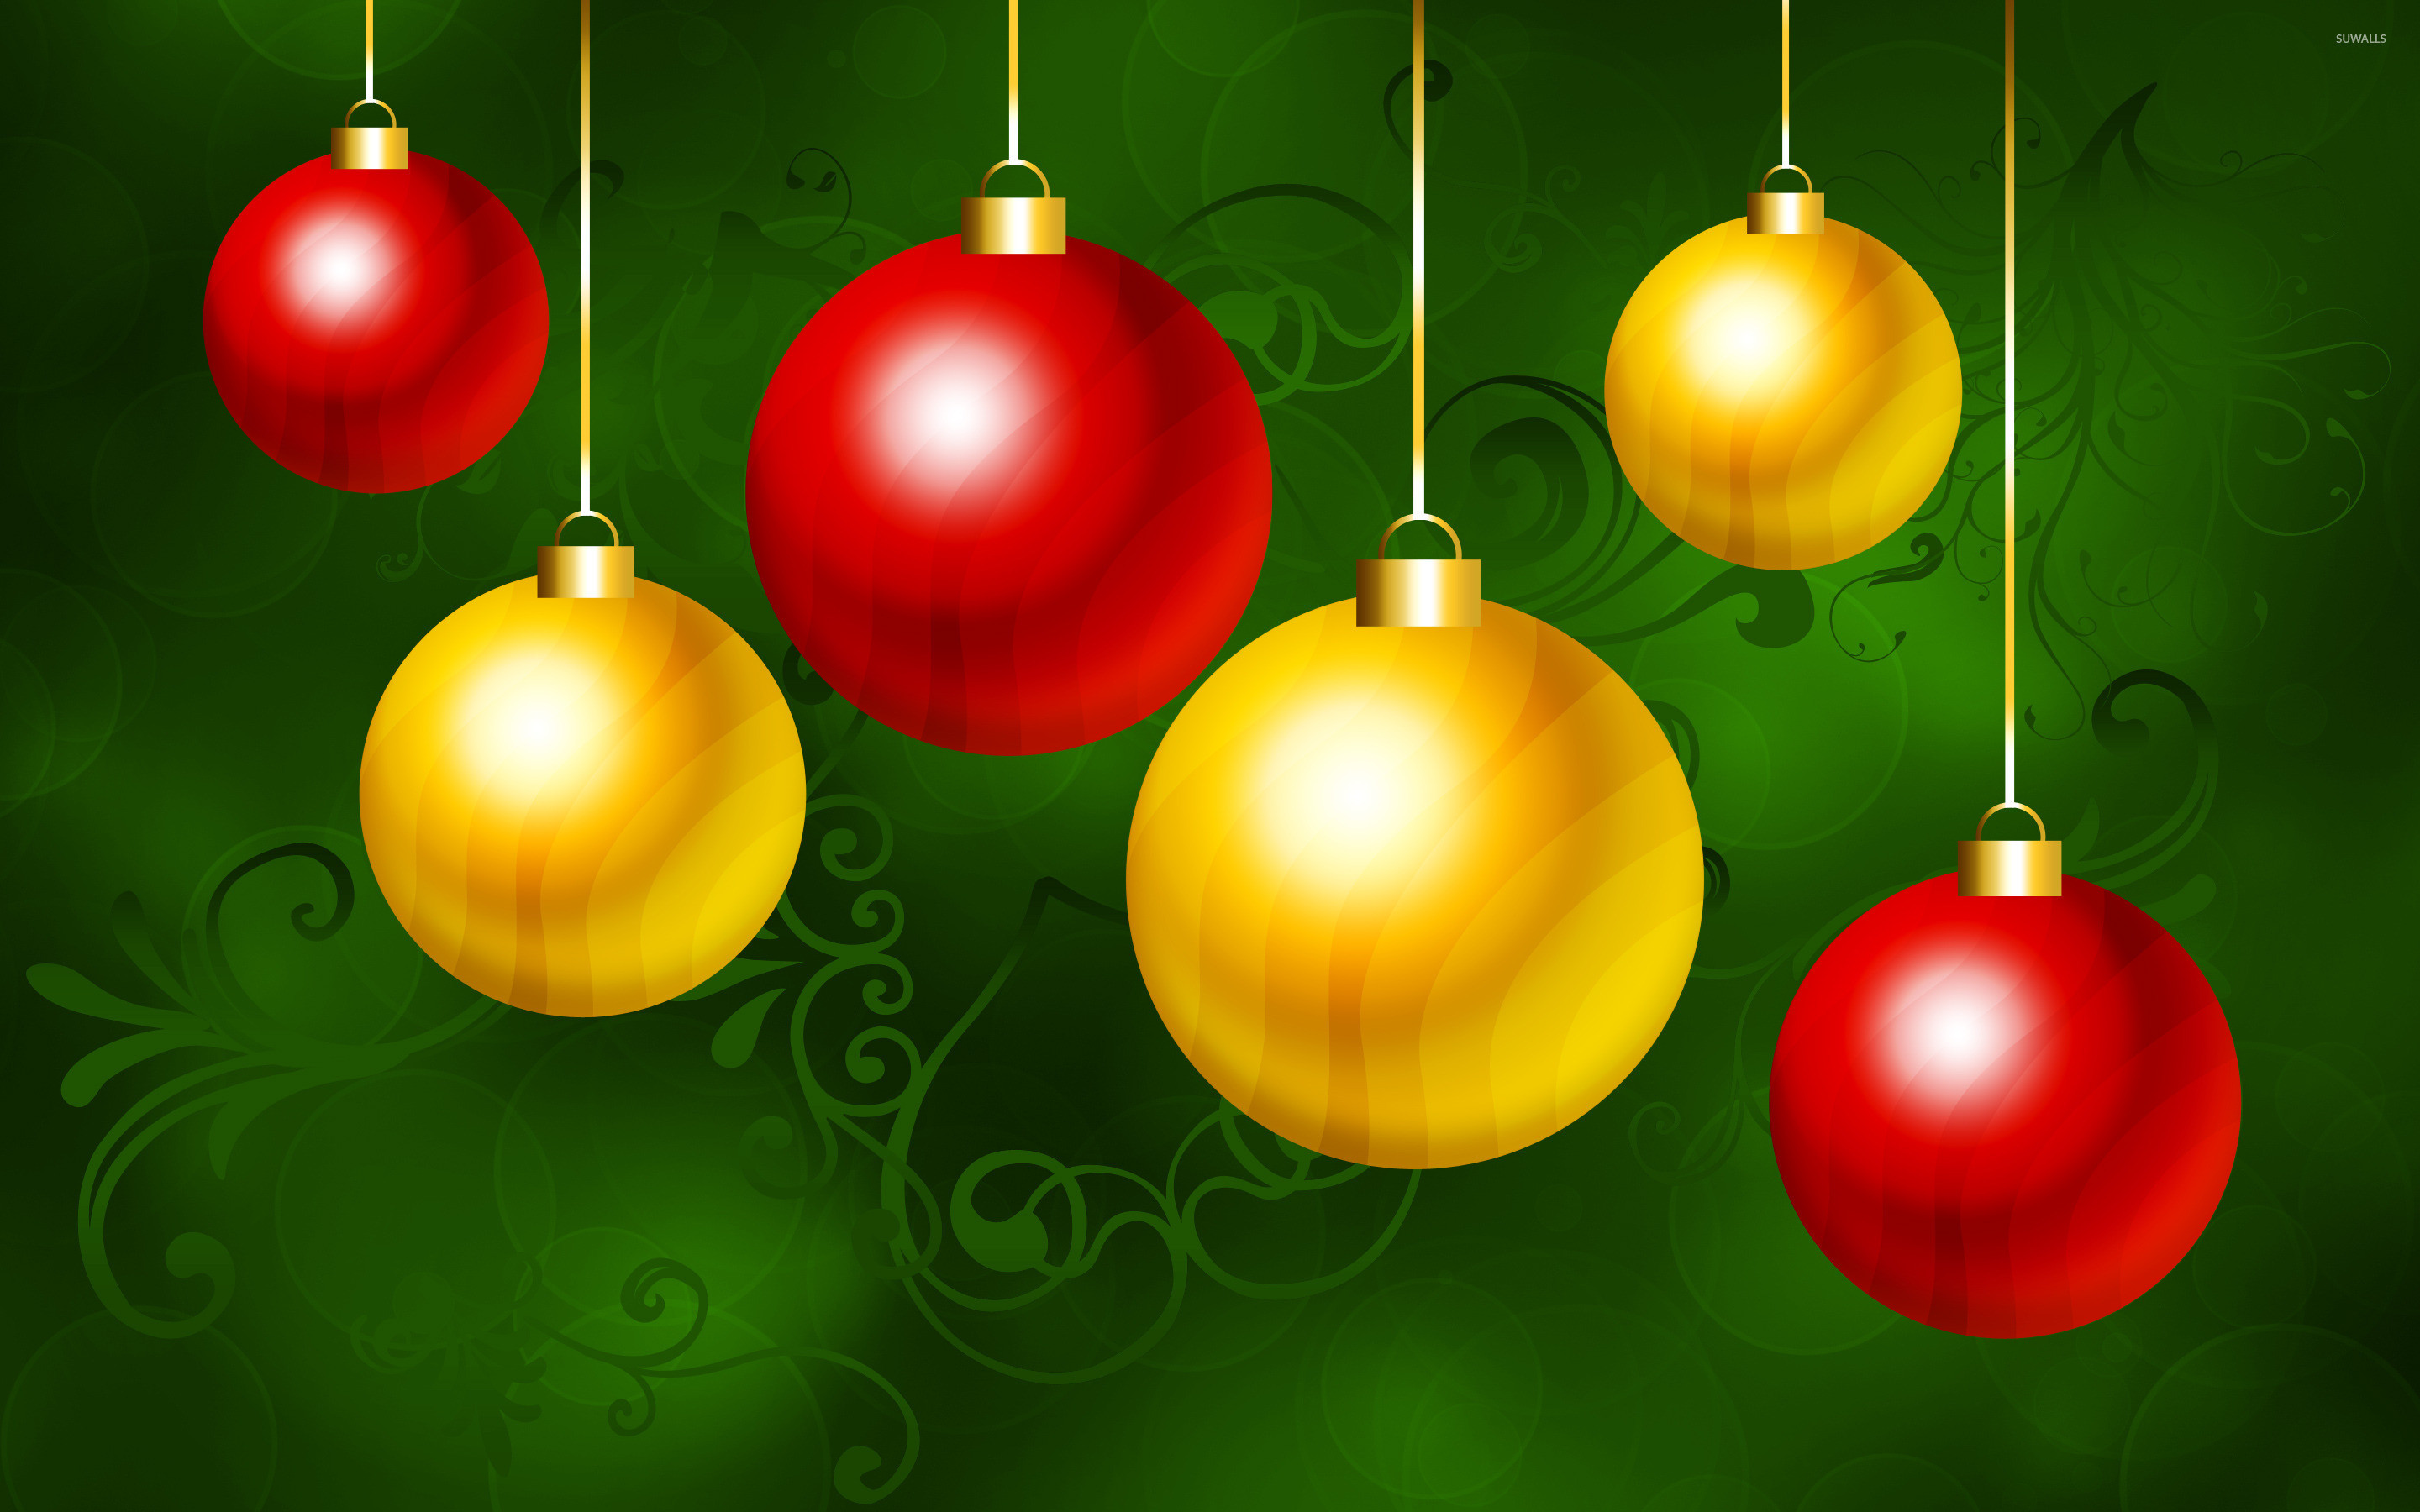 クリスマスの飾りの壁紙,クリスマスオーナメント,クリスマスの飾り,緑,休日の飾り,オーナメント